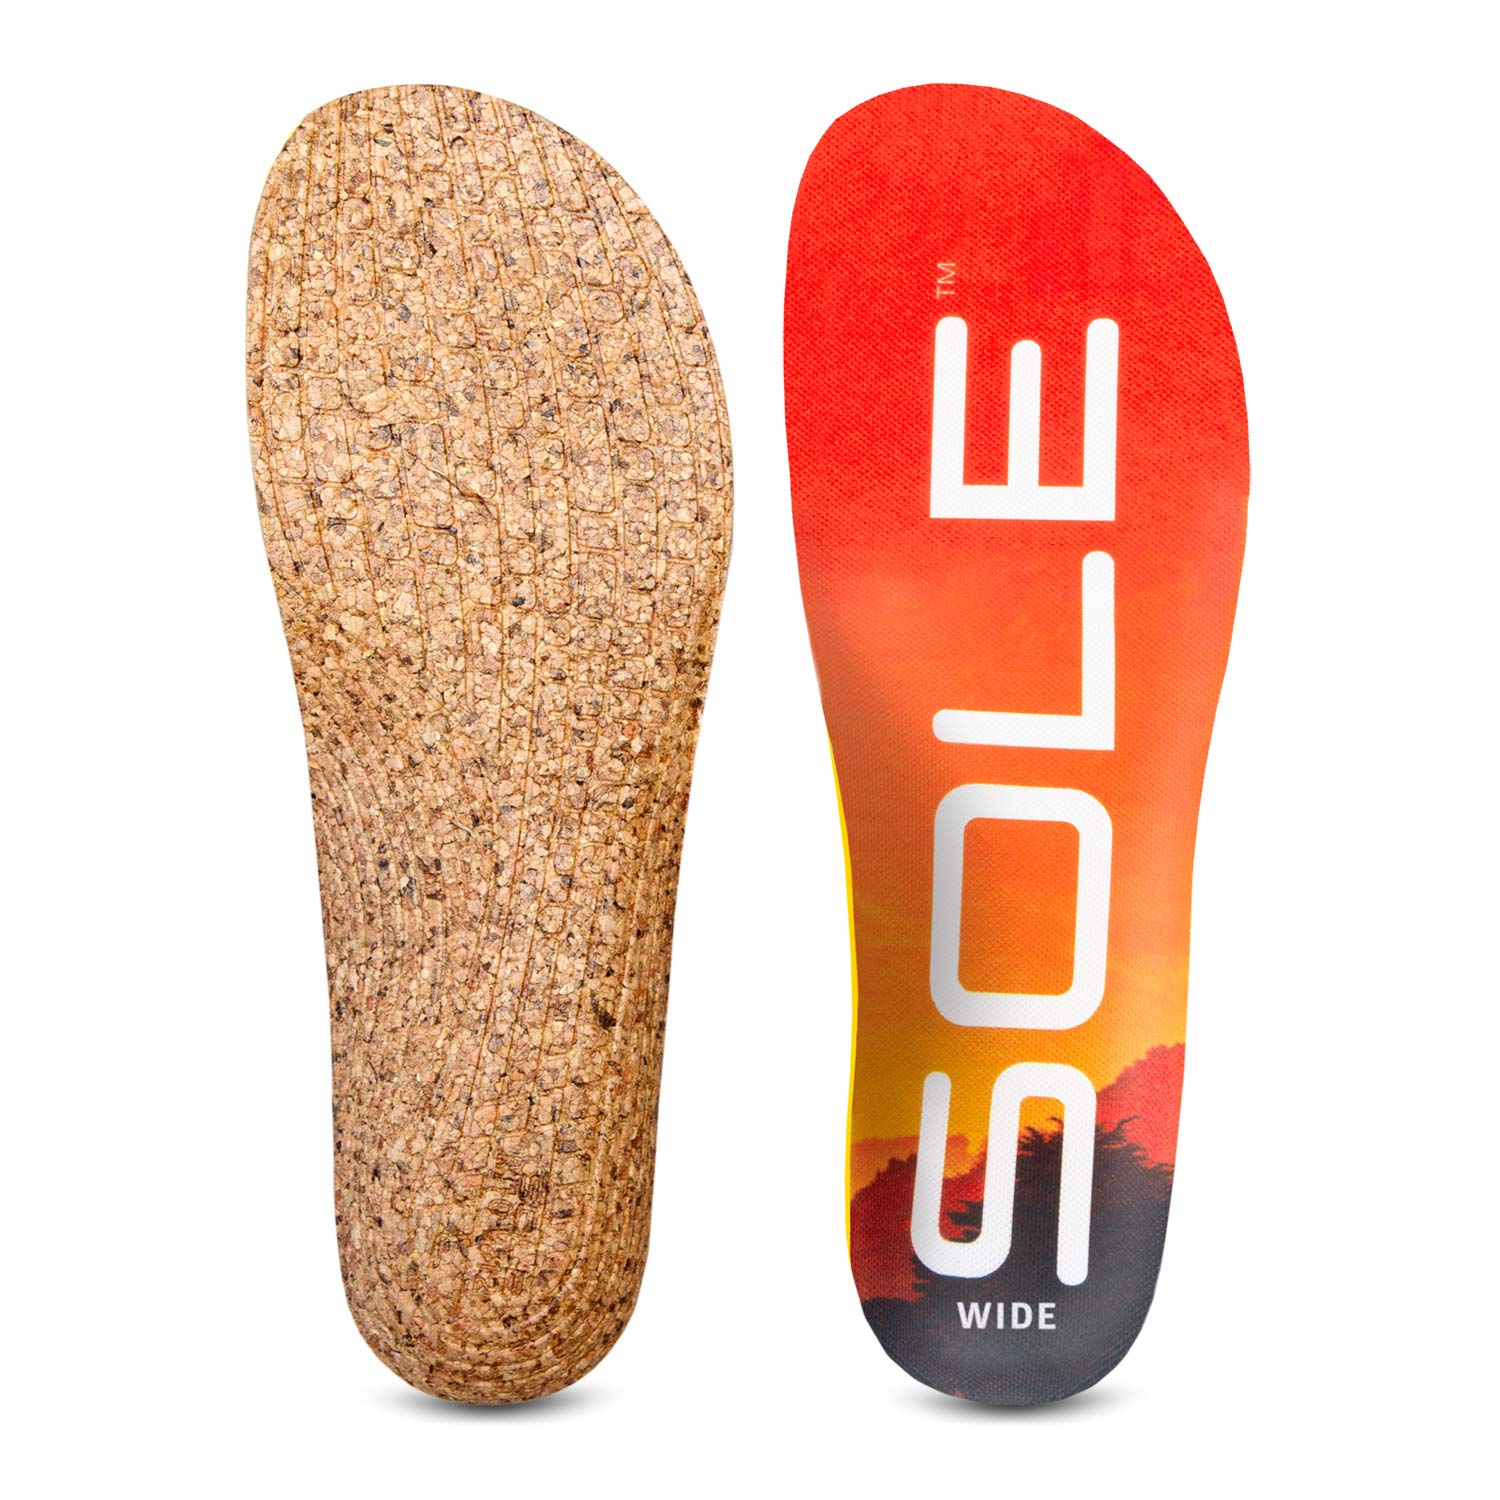 SOLE Performance Wide Medium Einlegesohlen für Plantarfasziitis, benutzerdefinierte formbare Orthesen für breite, aktive Schuhe, silber, Mens 3.5-4 / Womens 5.5-6